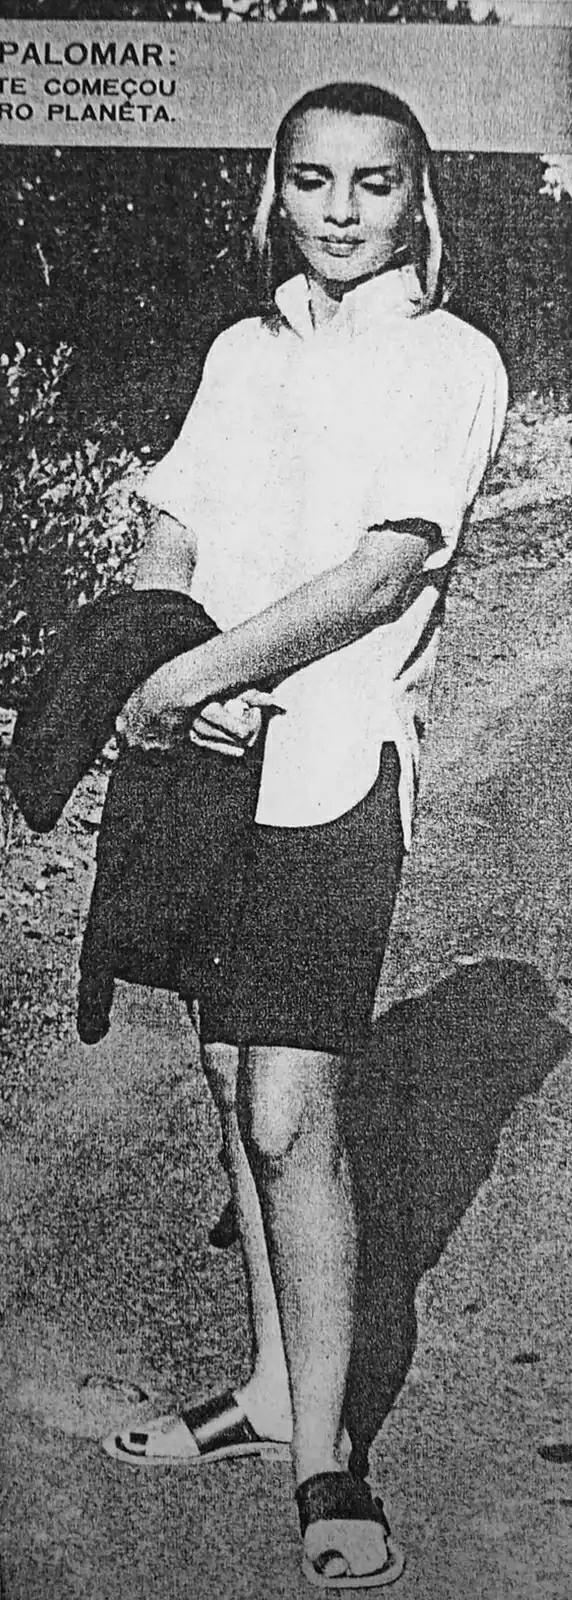 Mwanamke wa ajabu mnamo Mkutano wa UFO wa Palomar wa 1954